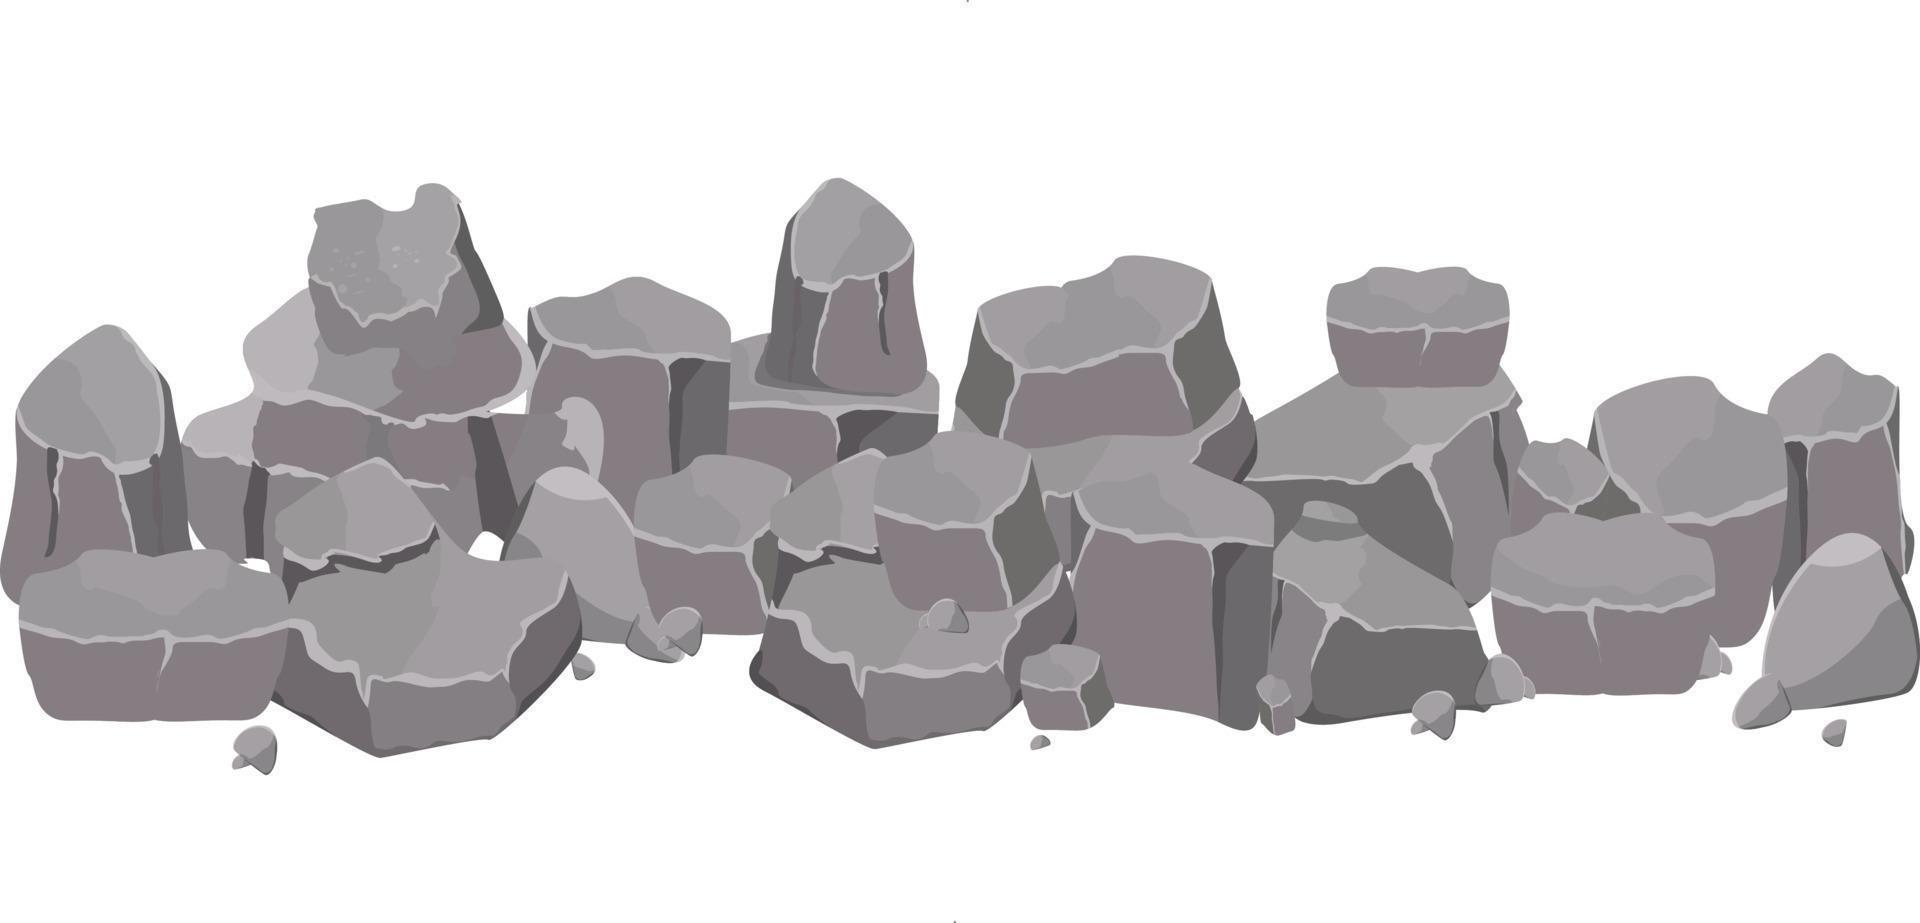 coleção de conjunto de desenhos animados de pedra rock. pedras e rochas em estilo plano isométrico. conjunto de pedregulhos diferentes. vetor